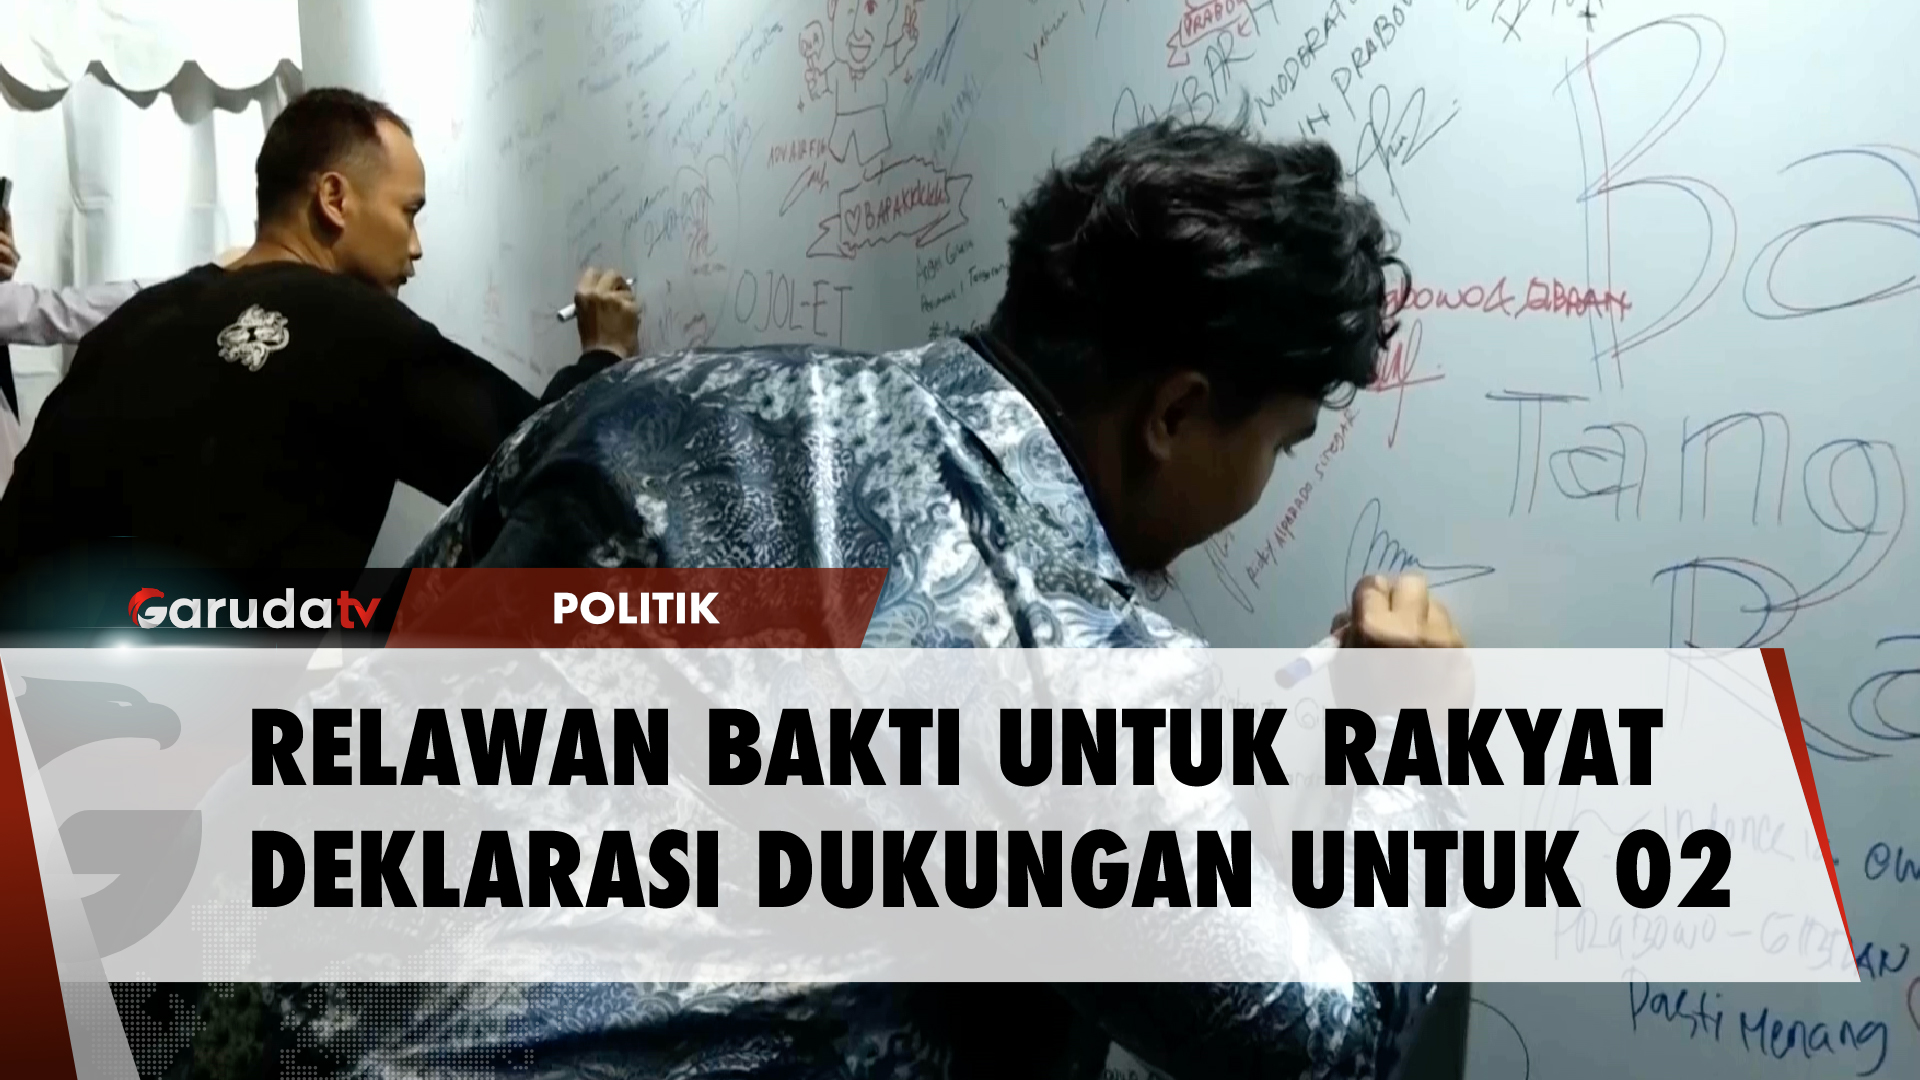 Prabowo Subianto Terima Dukungan Relawan Bakti Untuk Rakyat di Kartanegara